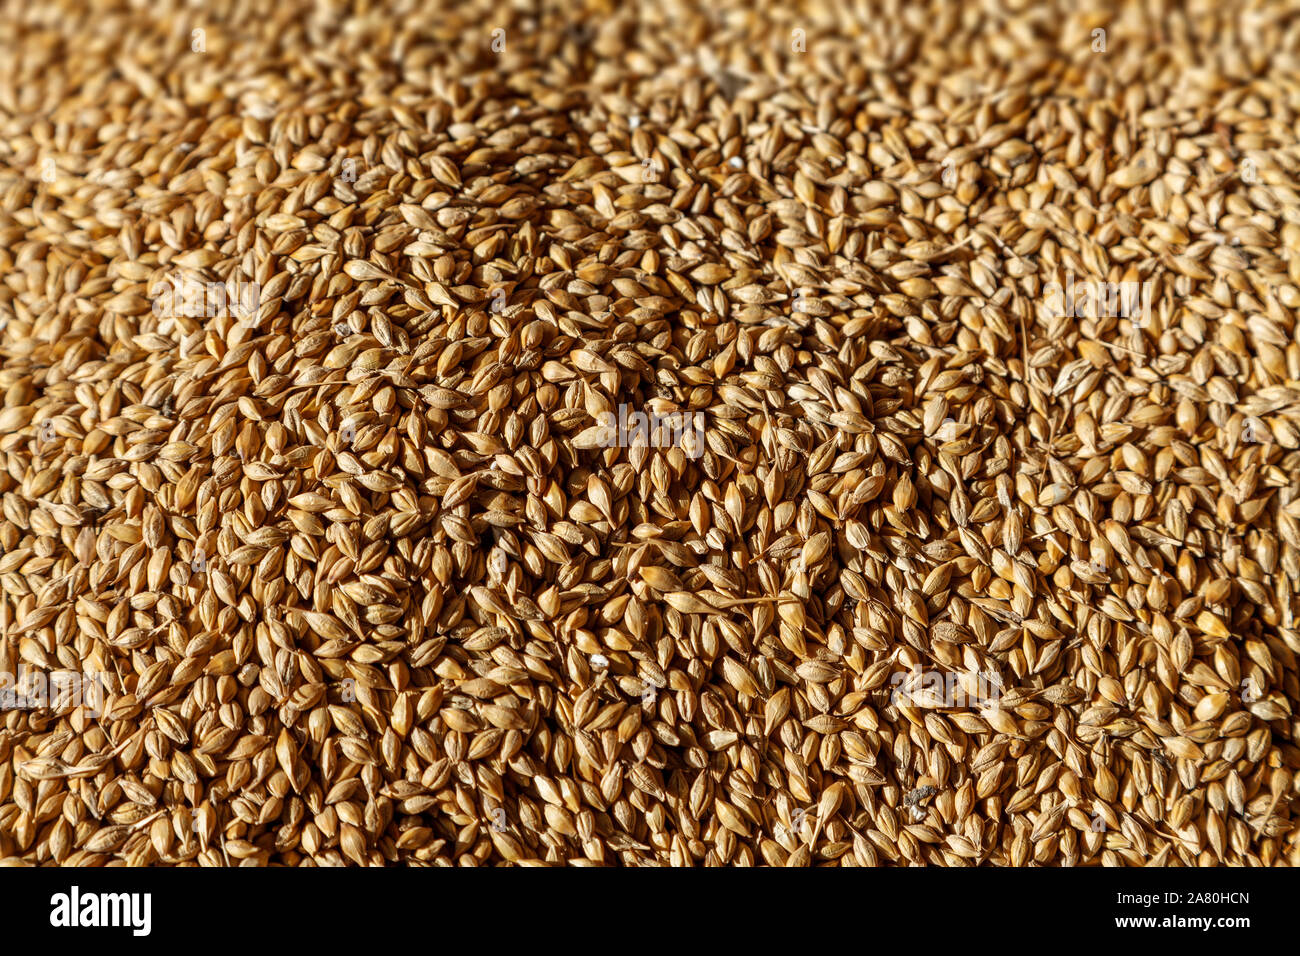 Immagine ravvicinata di un gran mucchio di golden grain cereale dopo essere raccolto Foto Stock